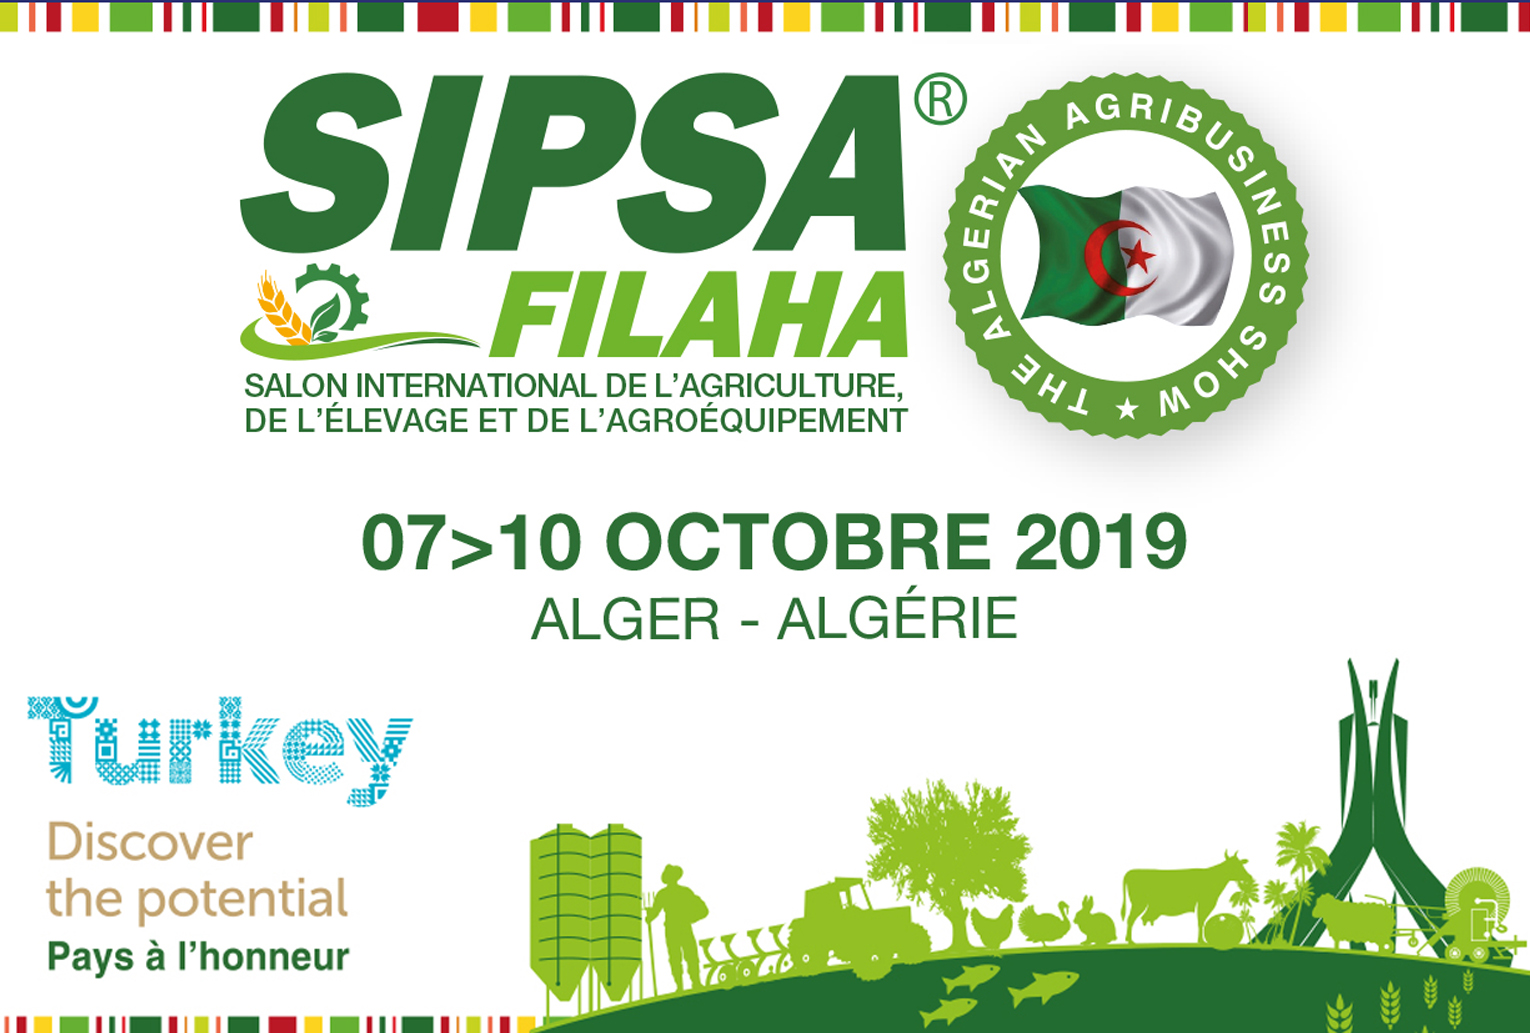 SIPSA-FILAHA 2019: Salon International de l’Agriculture, de l’Élevage et de l’Agroéquipement